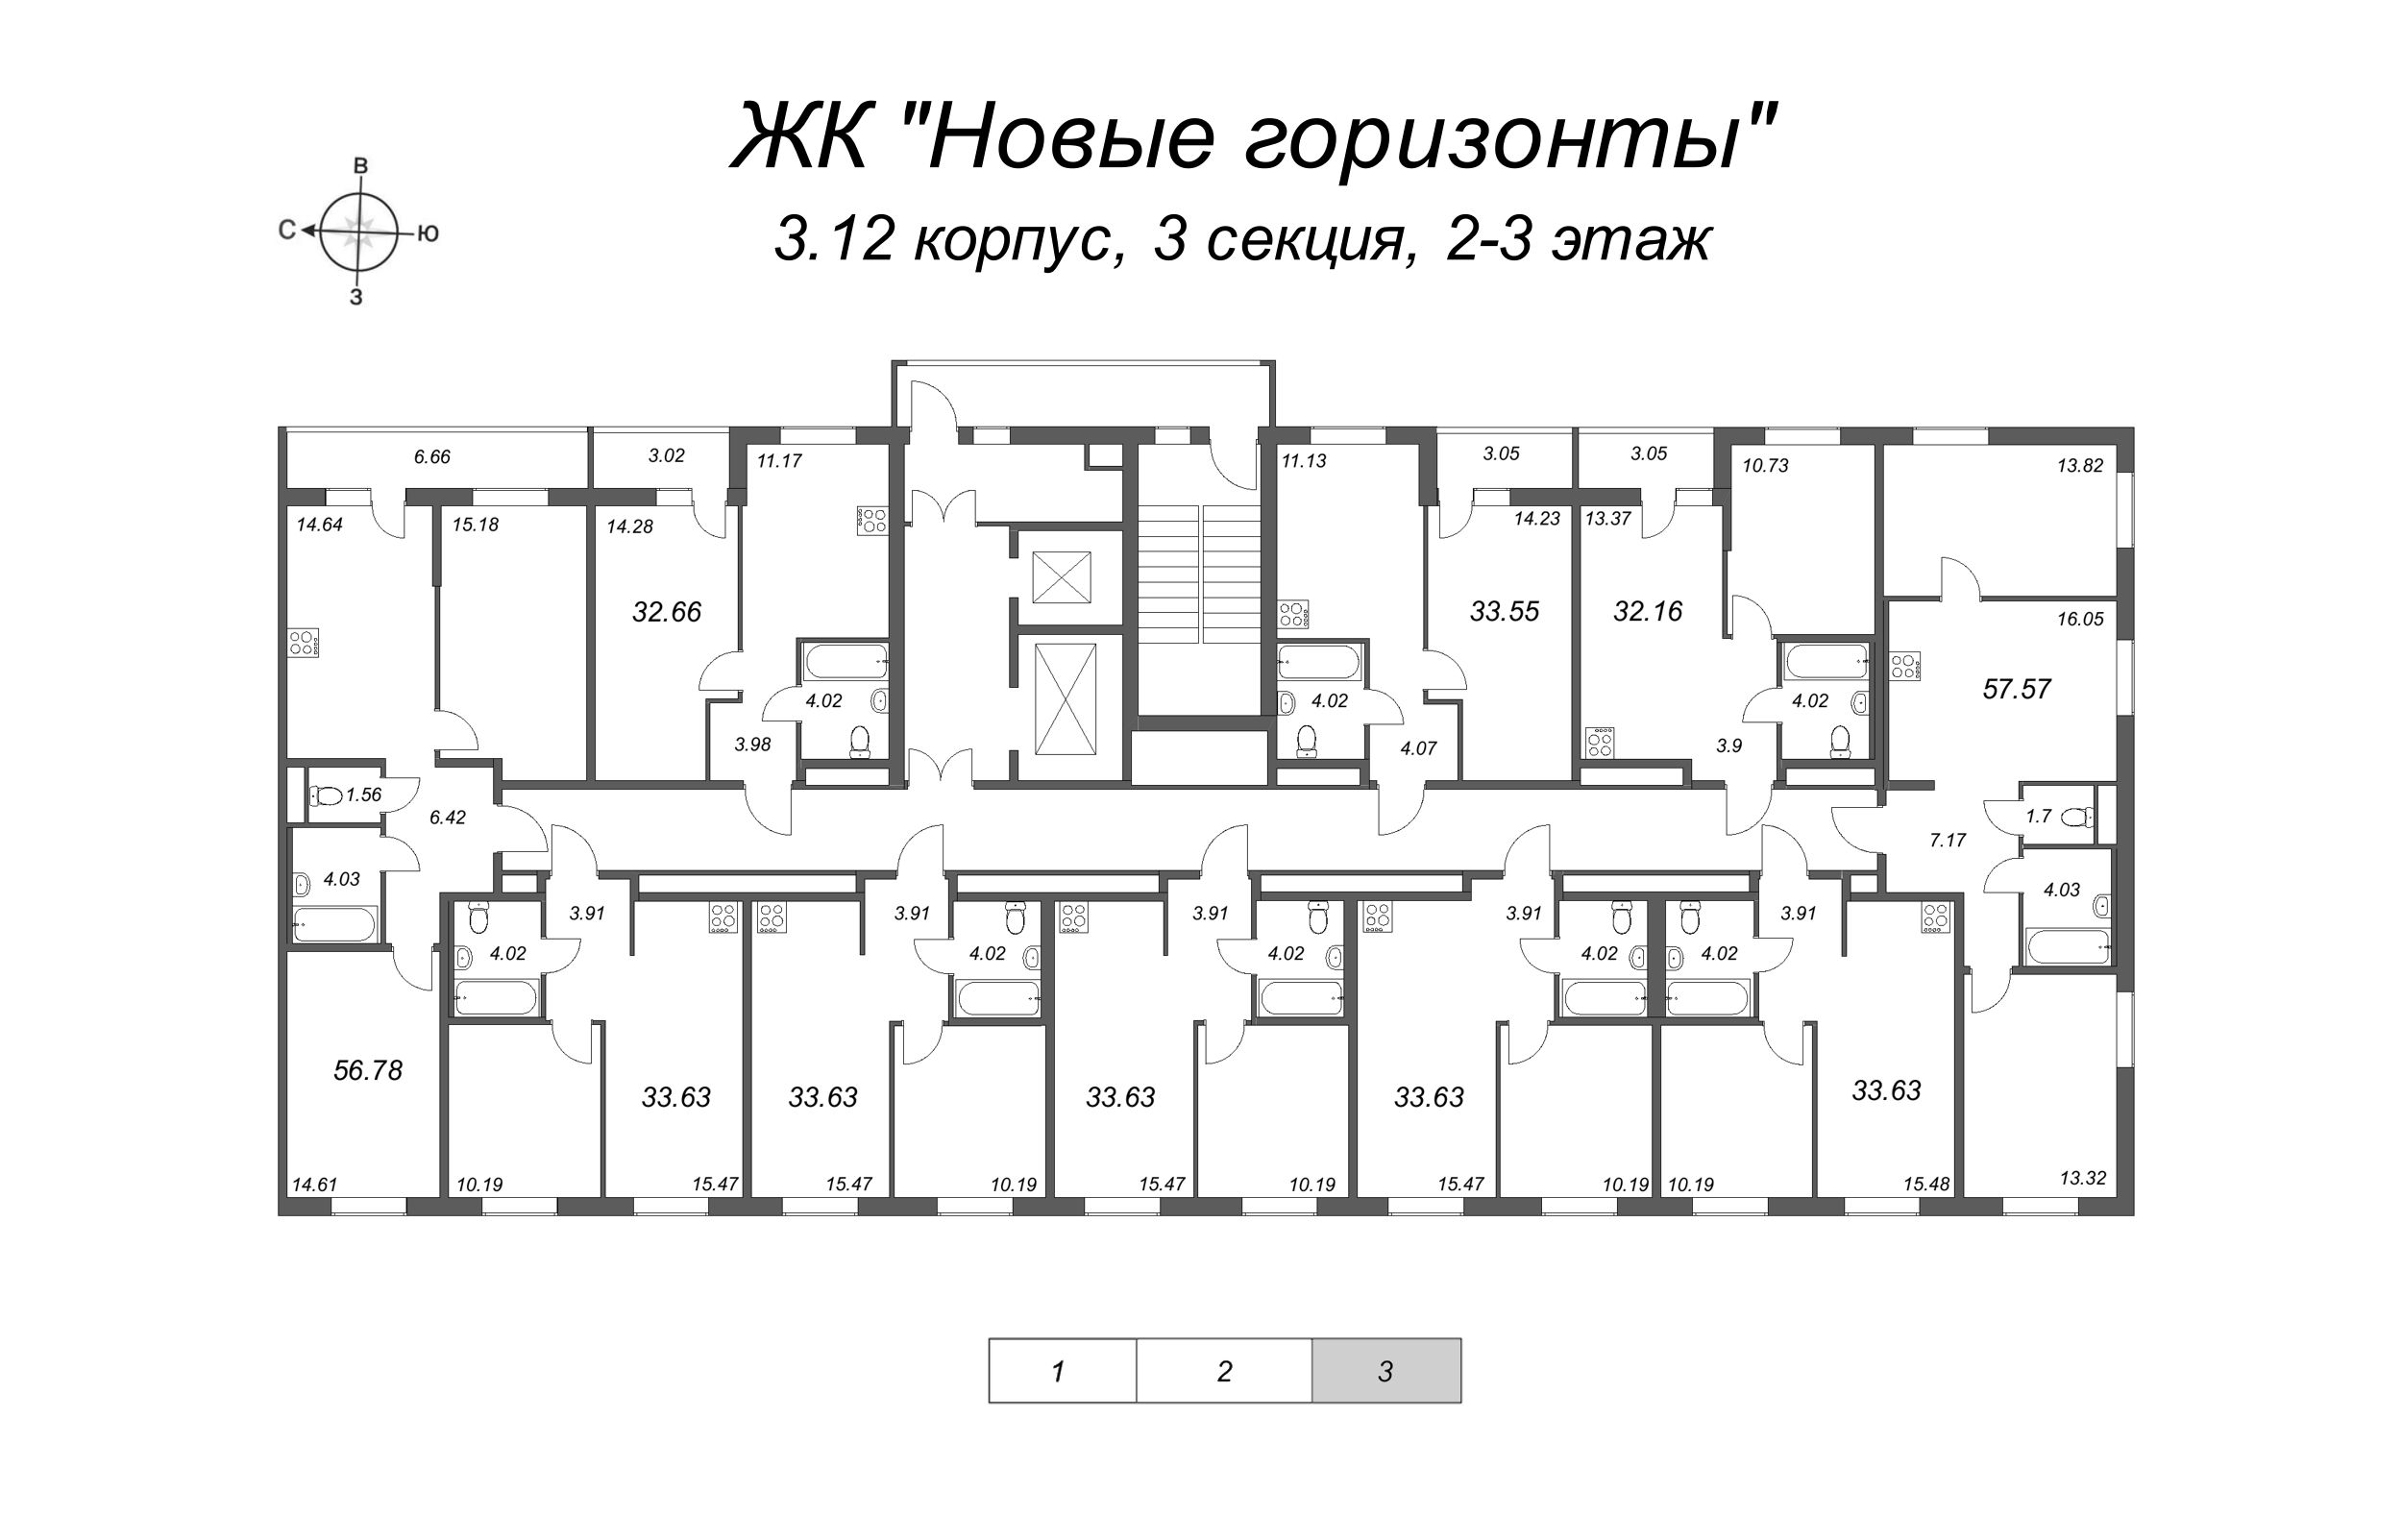 2-комнатная квартира, 56.78 м² в ЖК "Новые горизонты" - планировка этажа